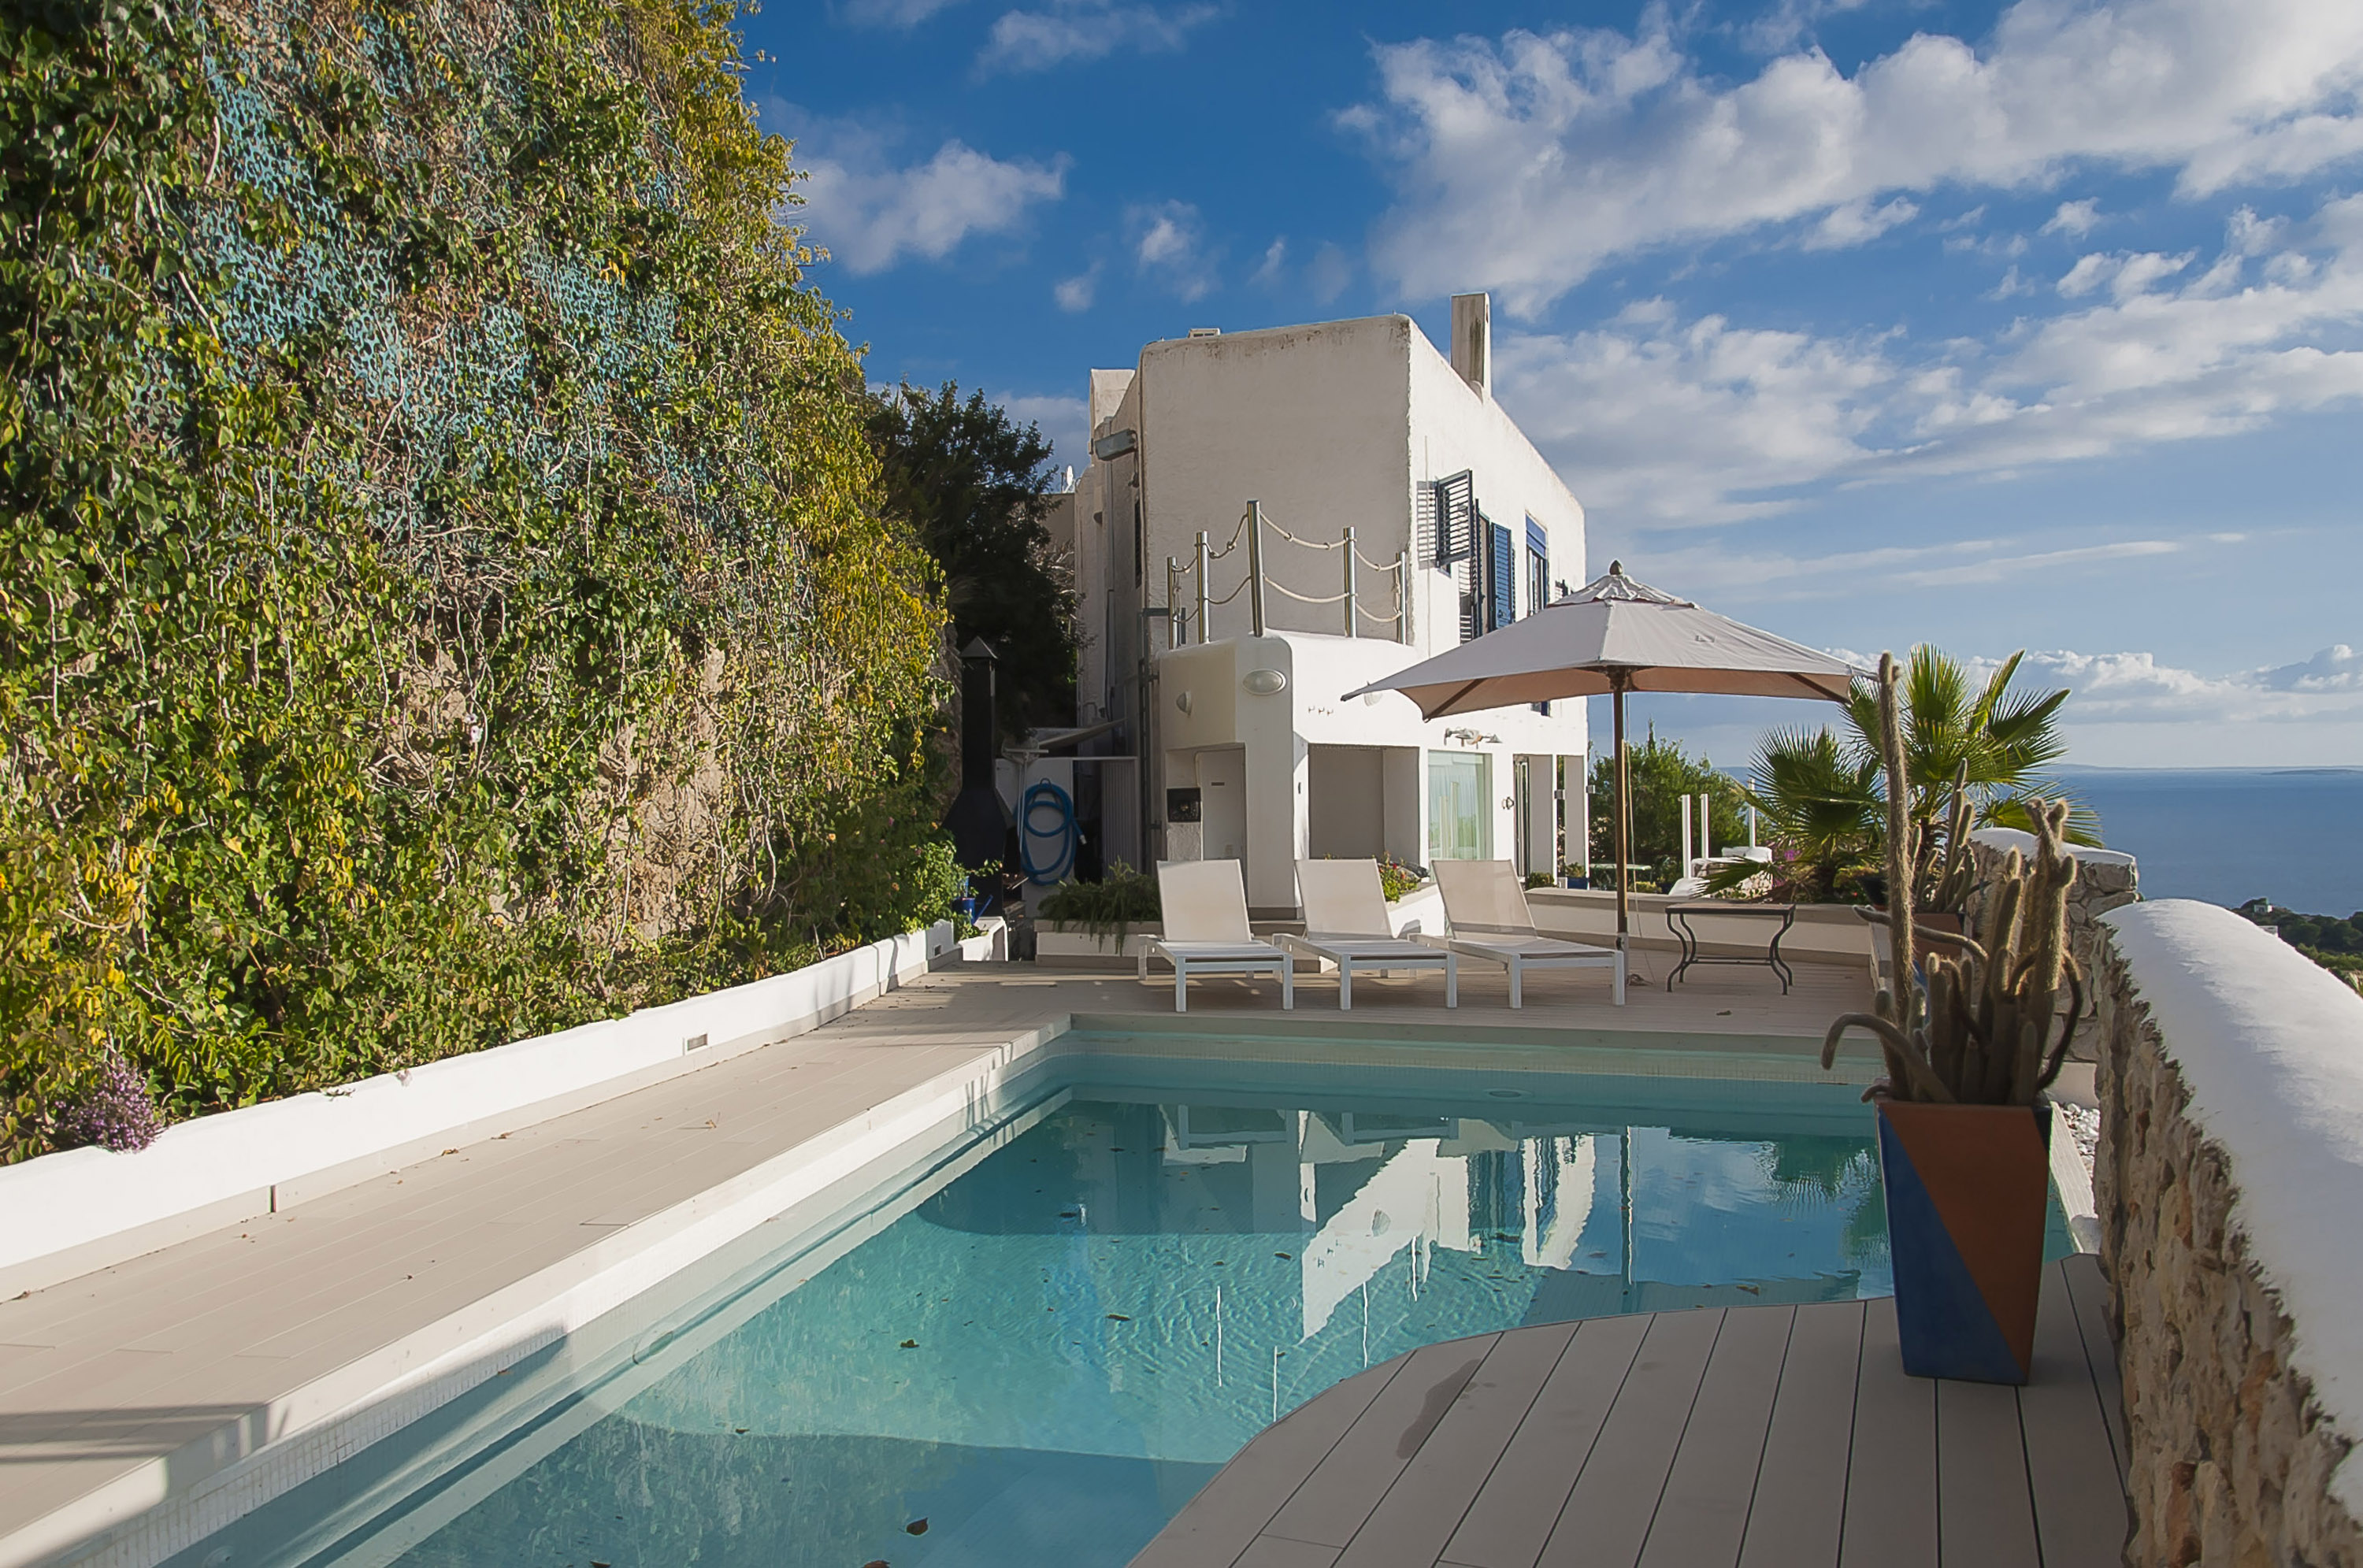 Mediterrane Villa in bester Lage von Ibiza with best views